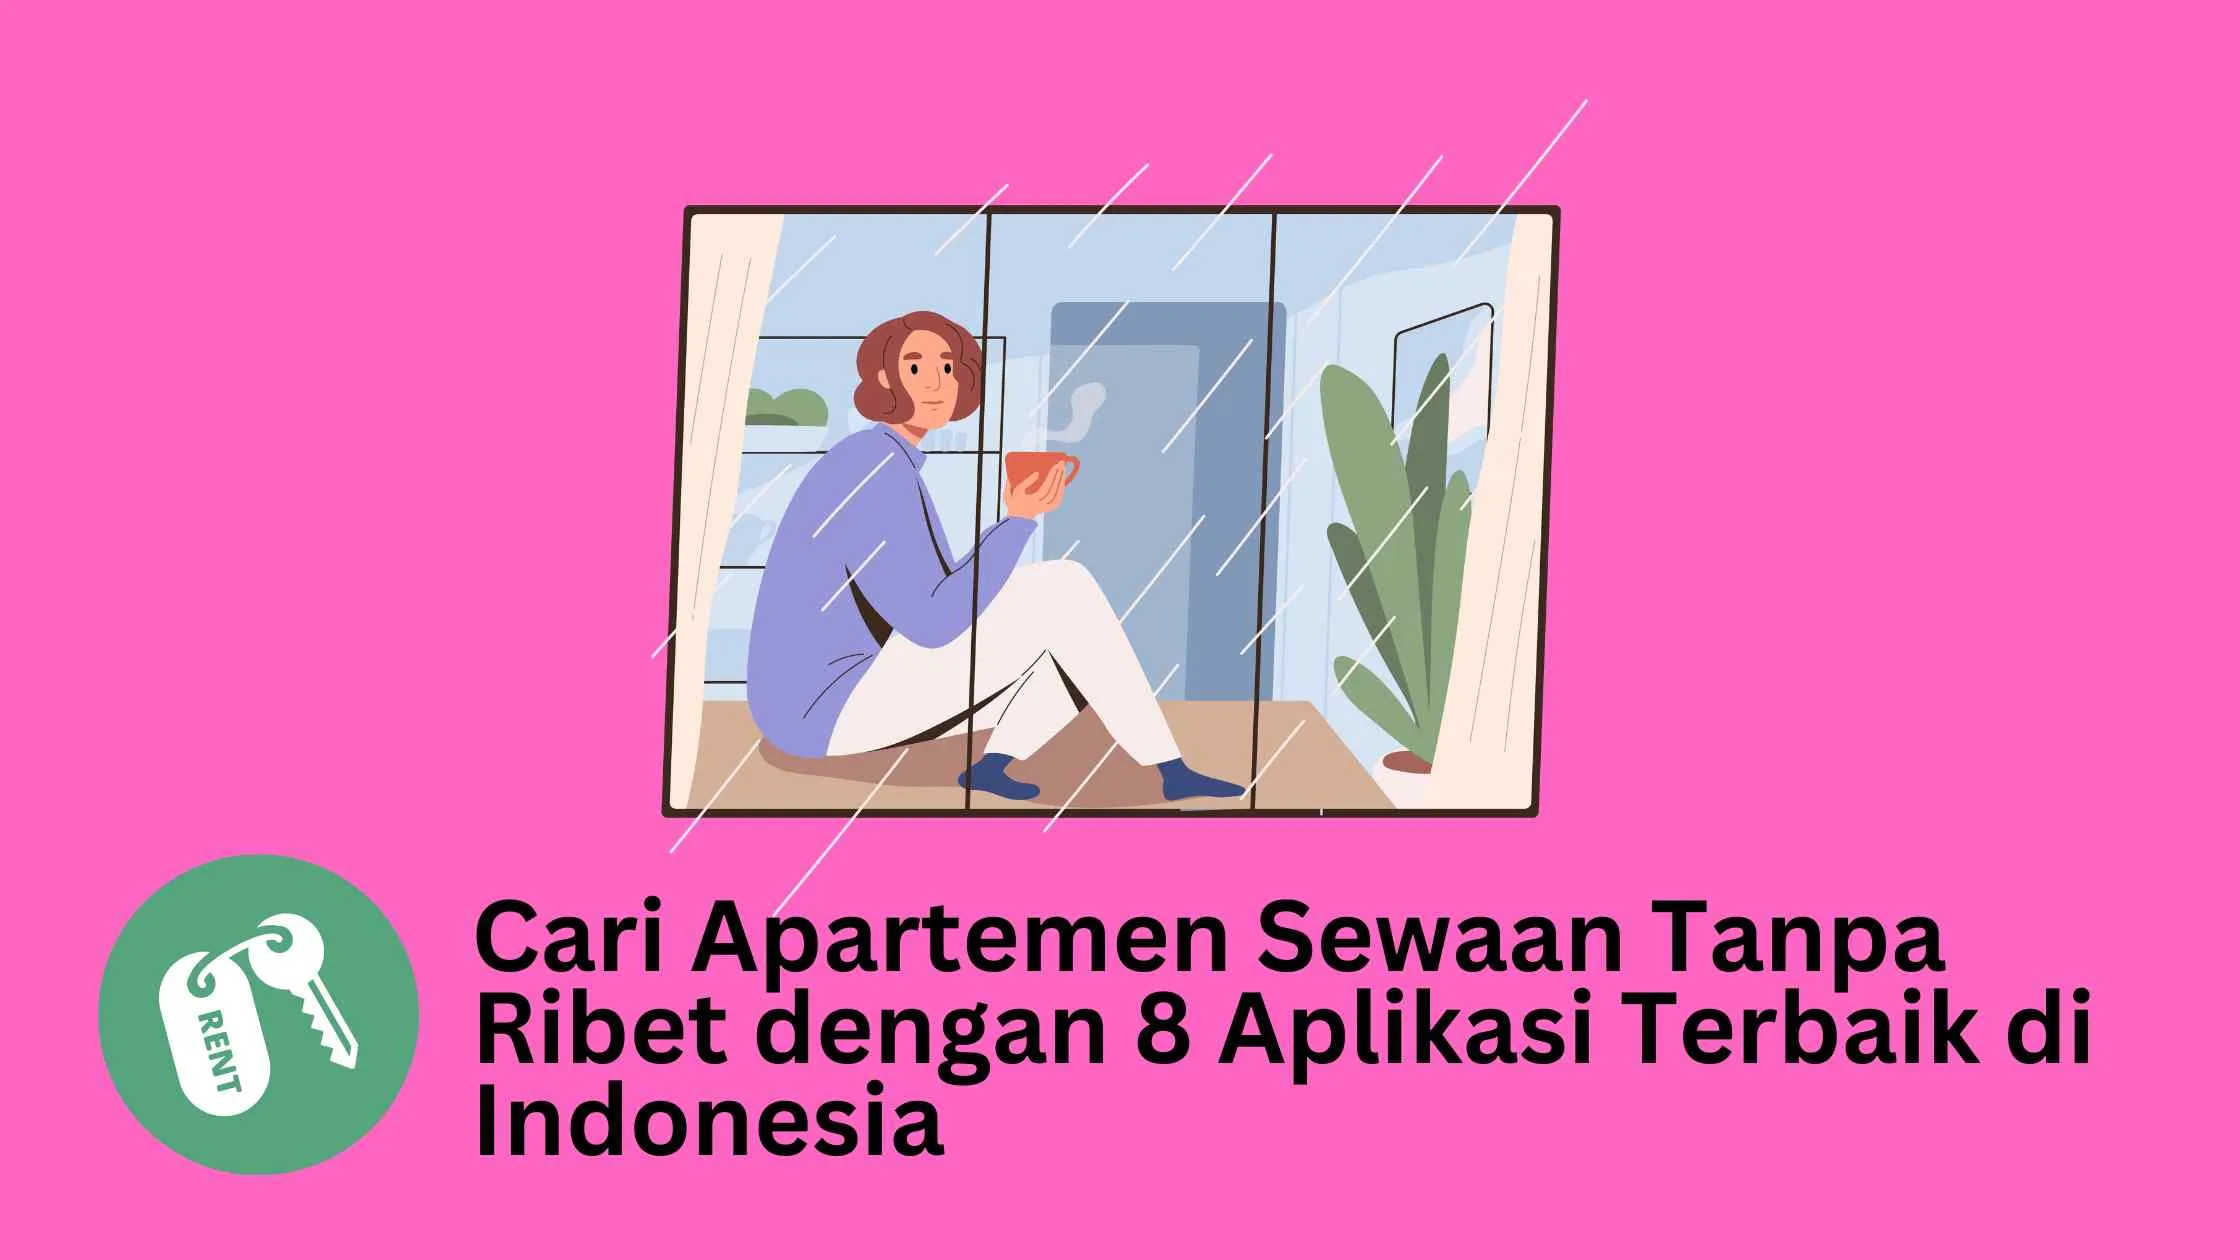 Cari Apartemen Sewaan Tanpa Ribet dengan 8 Aplikasi Terbaik di Indonesia